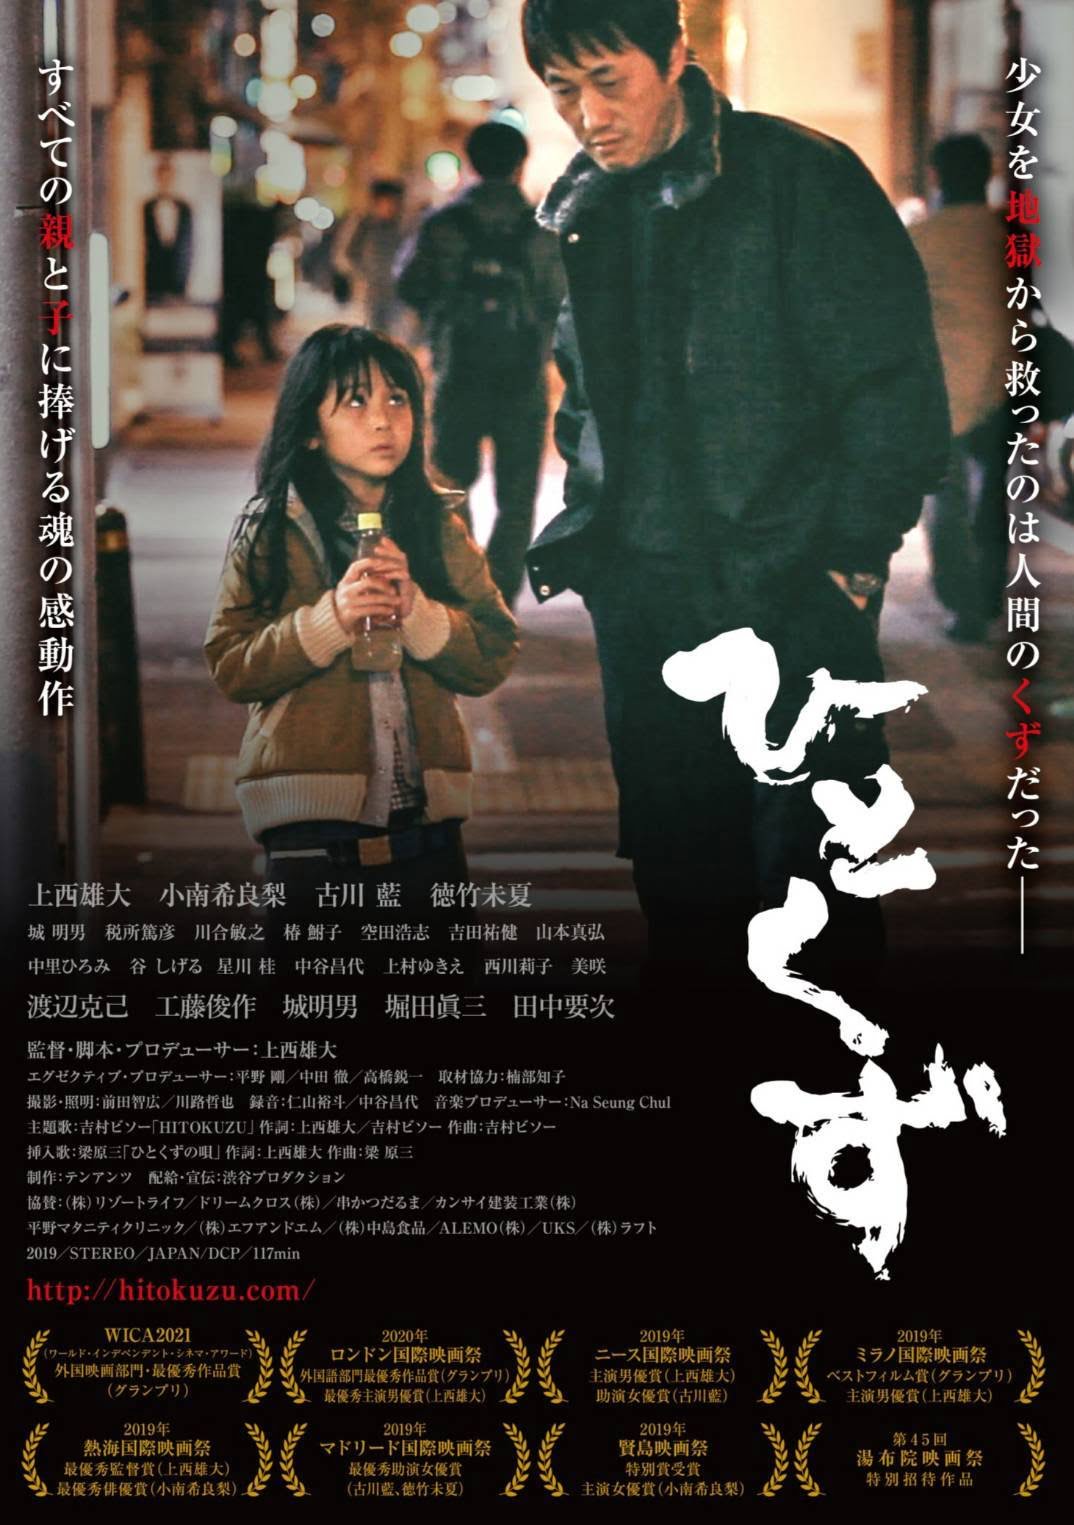 【日本映画】「ひとくず〔2020〕」を観ての感想・レビュー